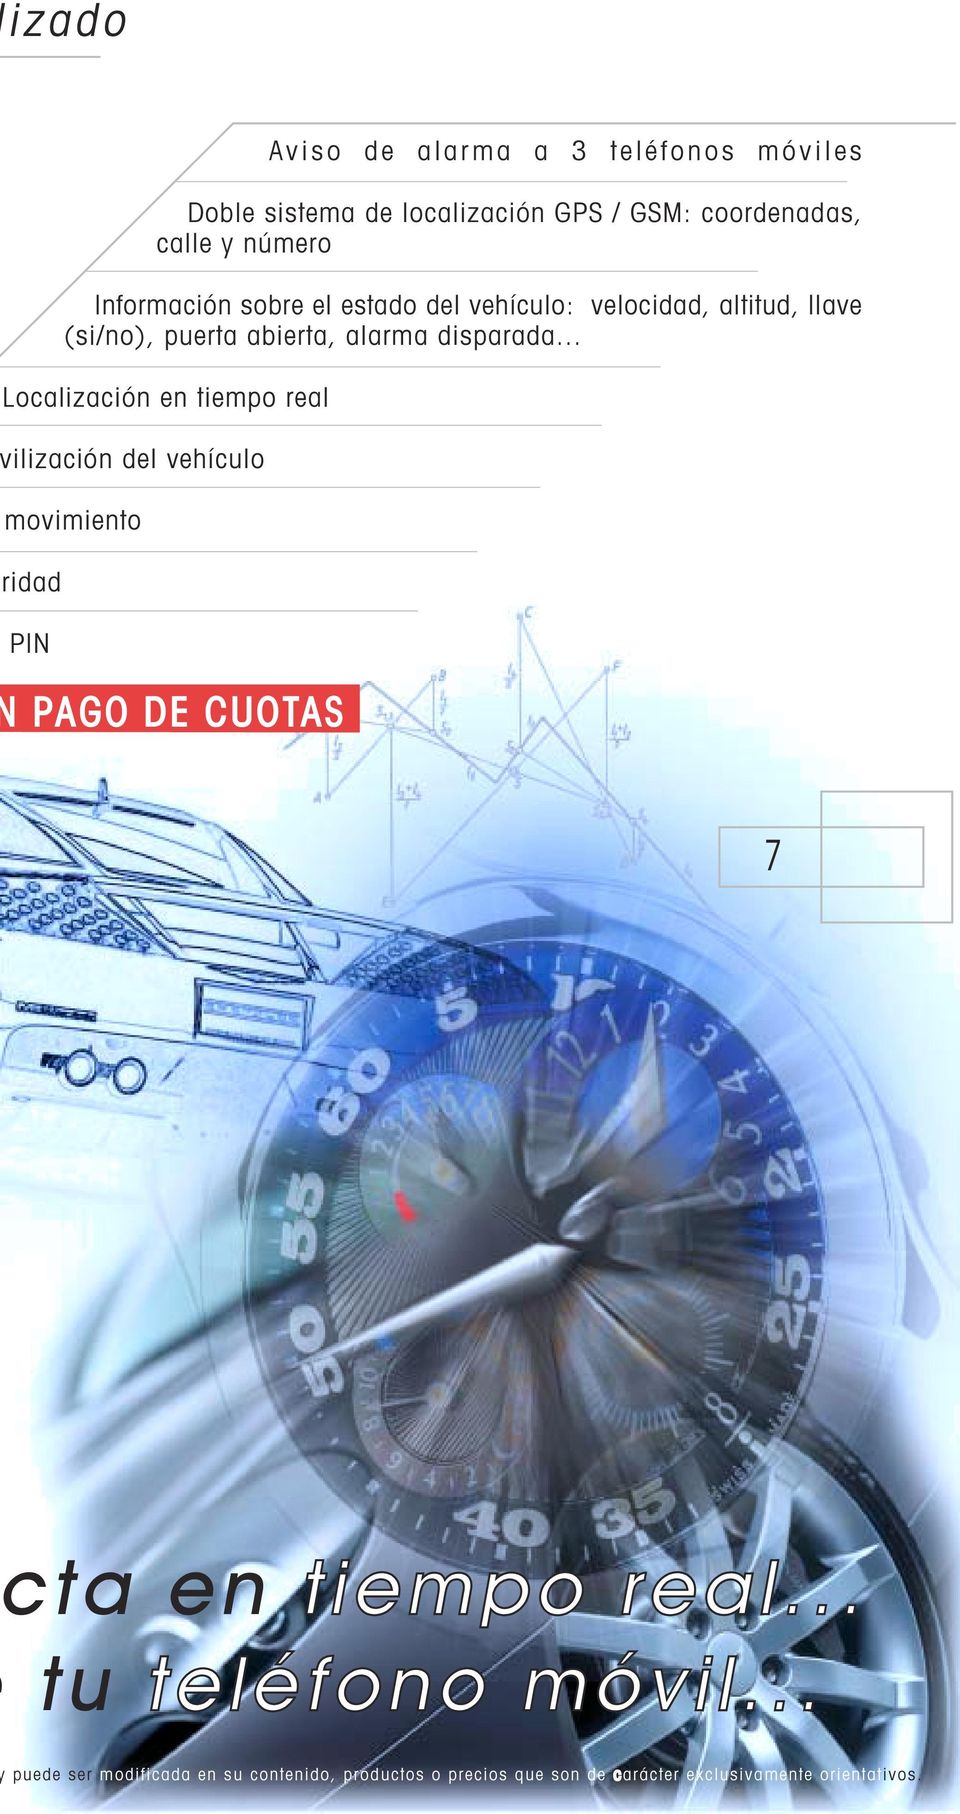 .. Localización en tiempo real ilización del vehículo movimiento ridad PIN PAGO DE CUOTAS 7 ta en tiempo real.